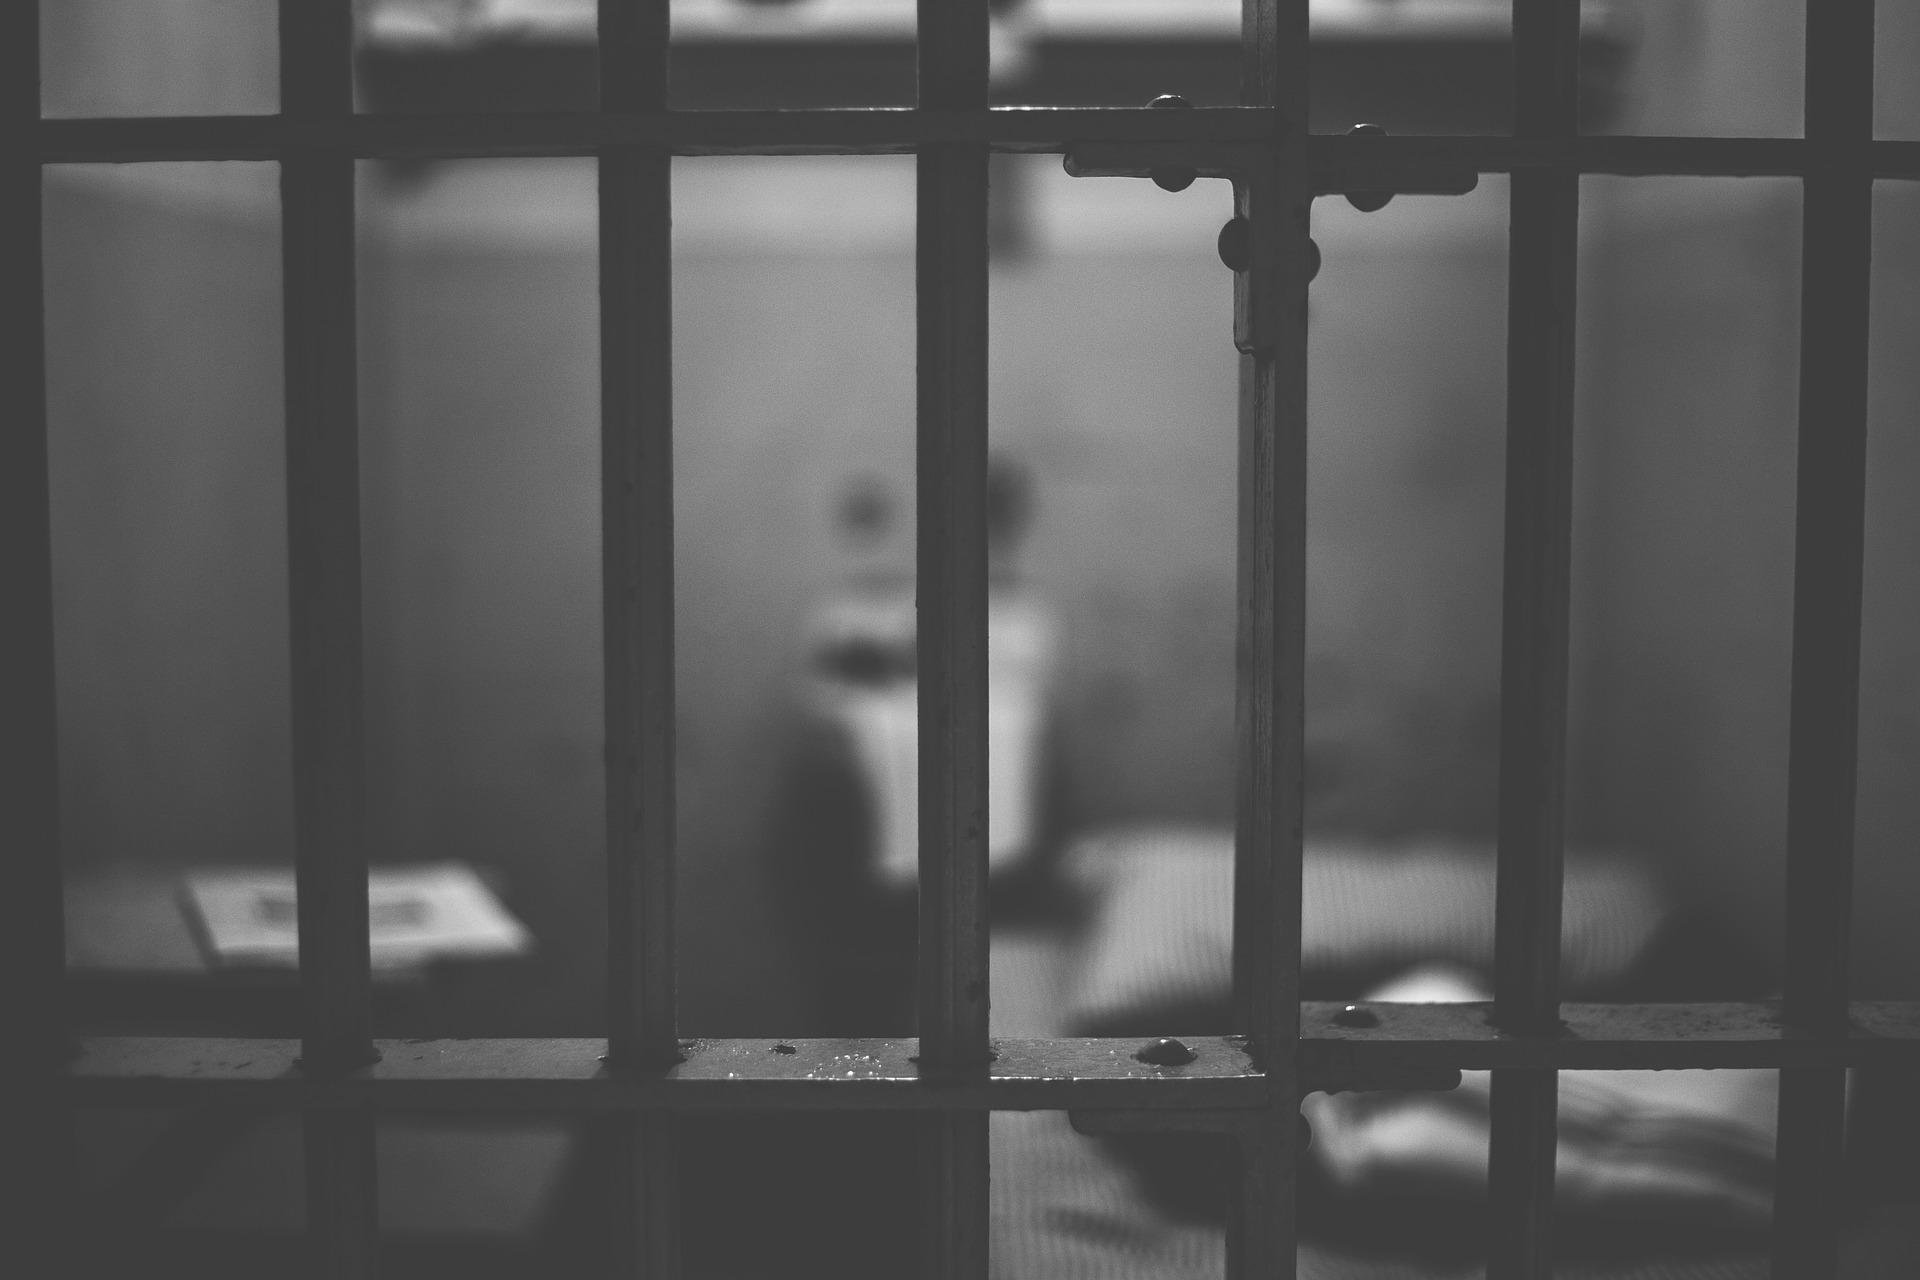 Altri episodi di violenza nelle carceri di Alessandria: due celle a fuoco e una nuova aggressione a un agente